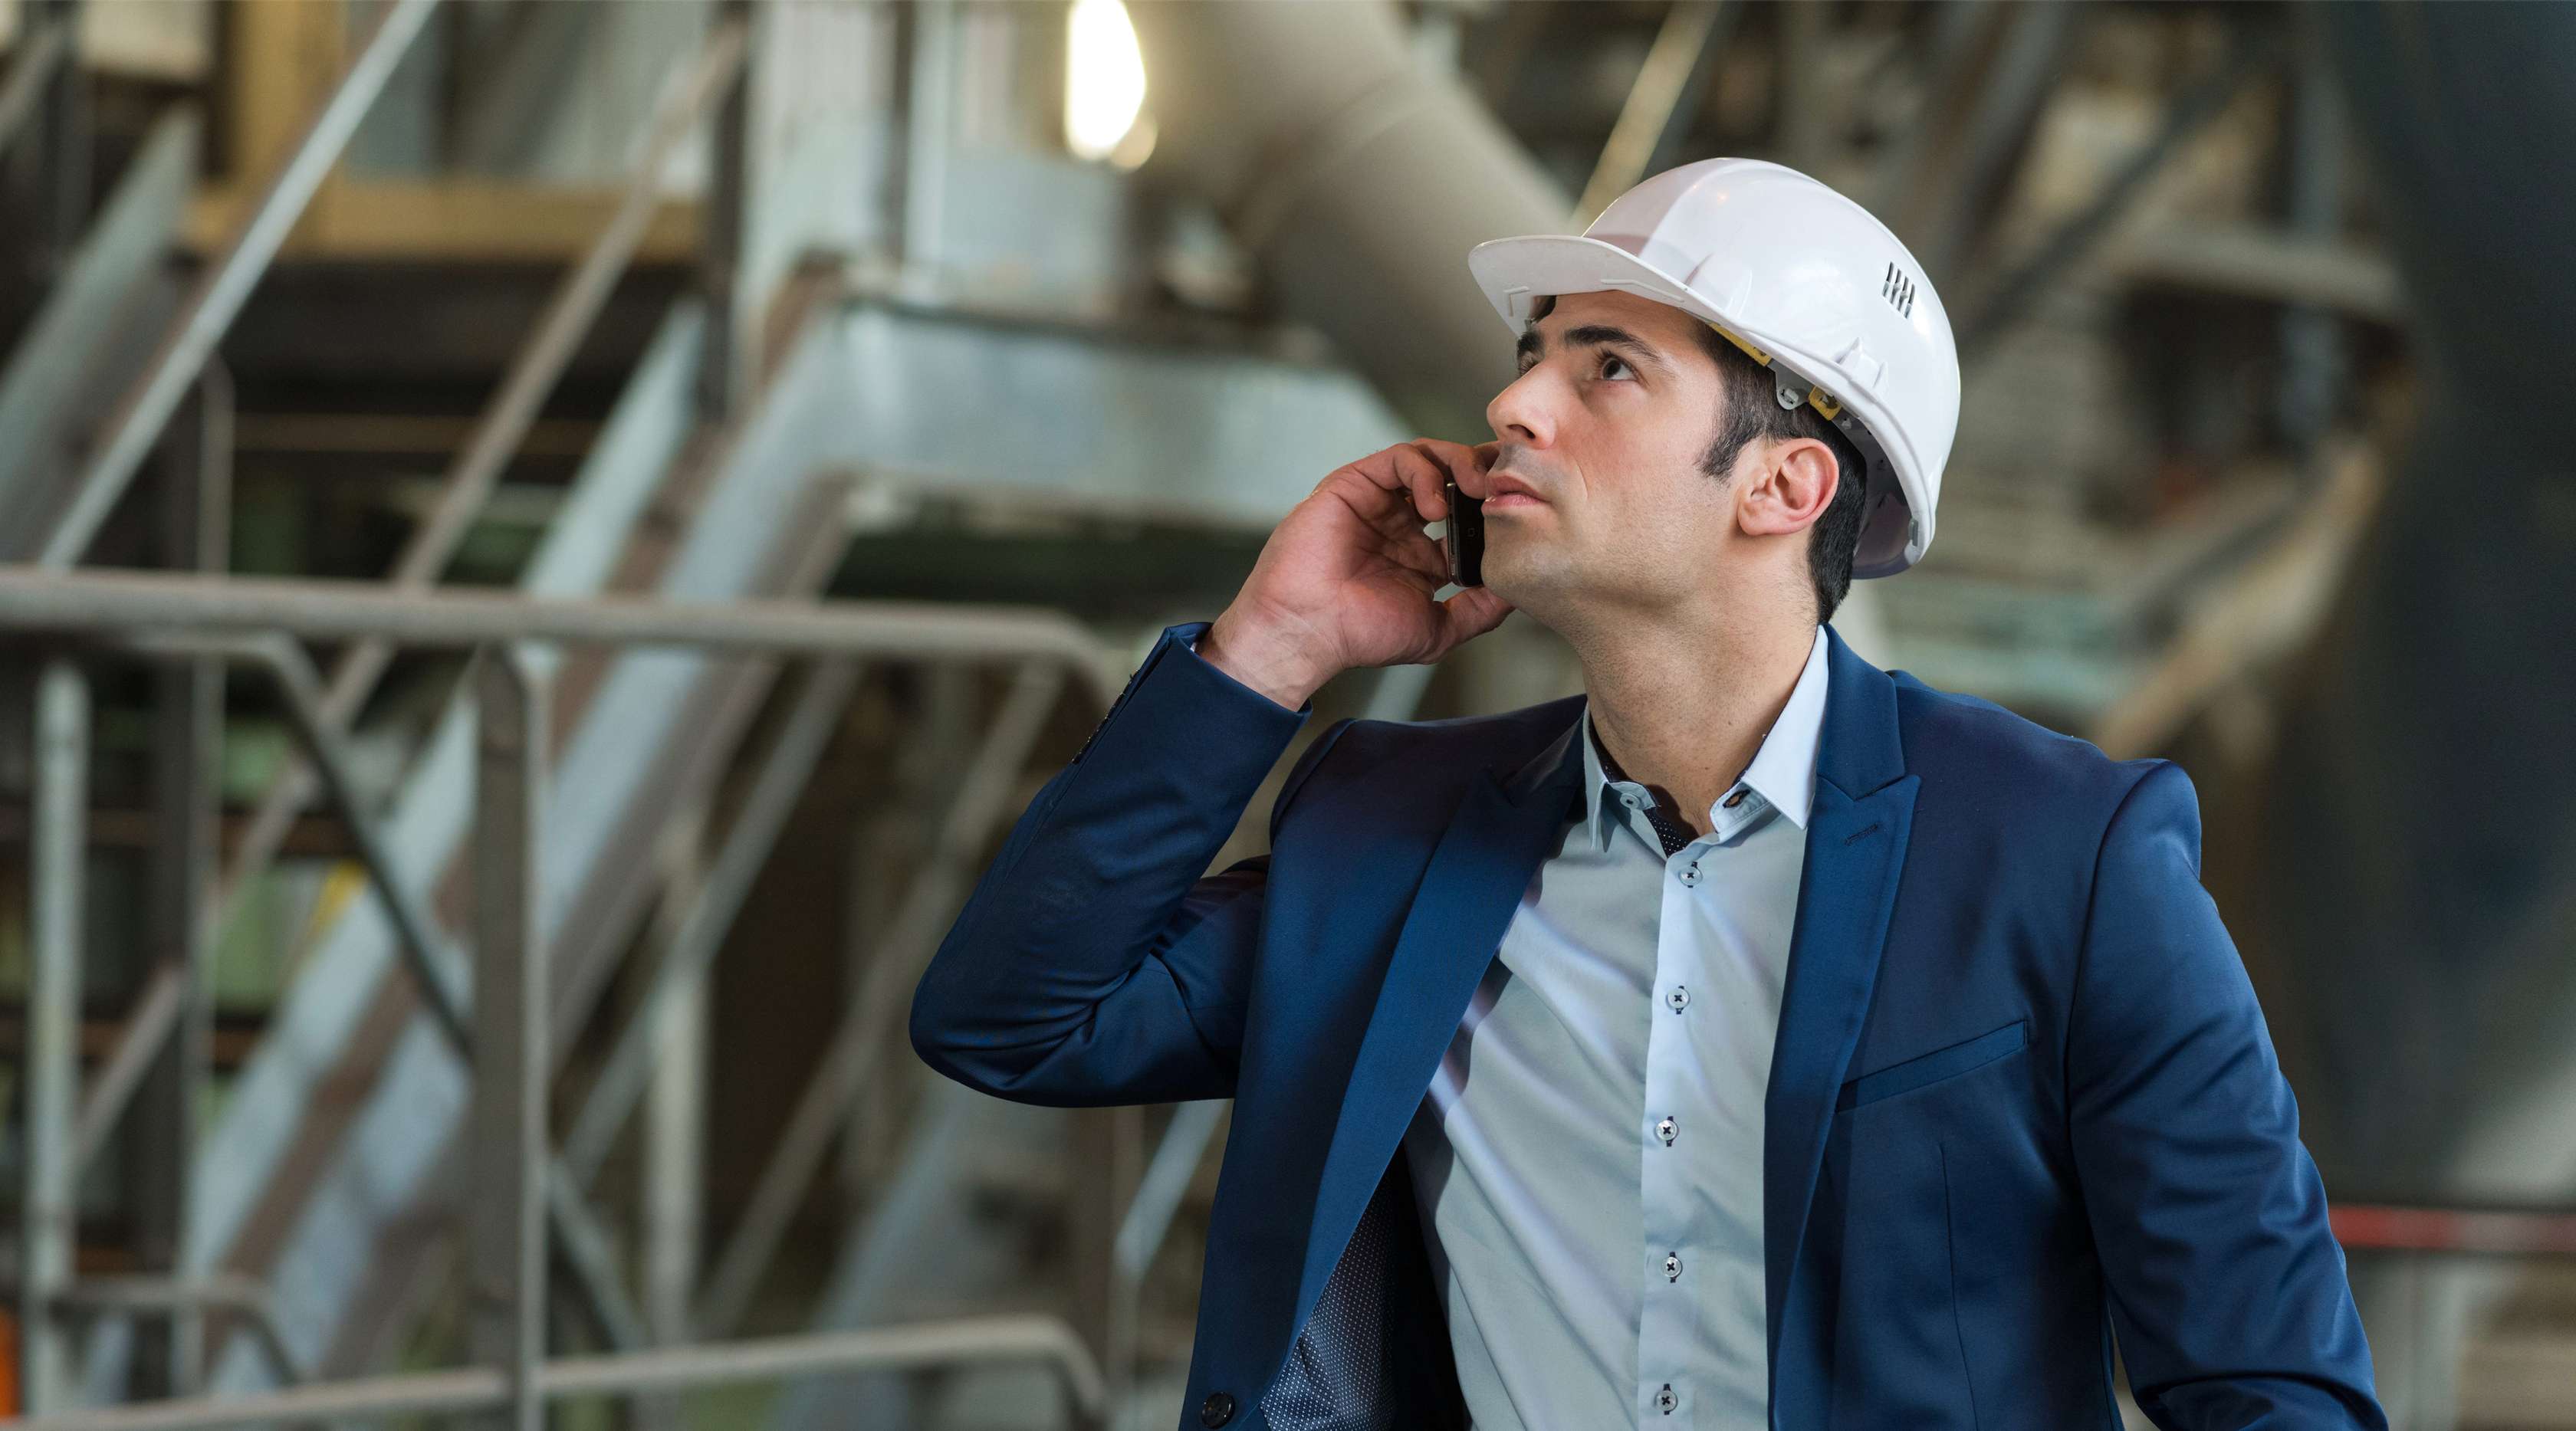 Ein Ingenieur im blauen Anzug und weißem Helm telefoniert und schaut zu einer Pumpe